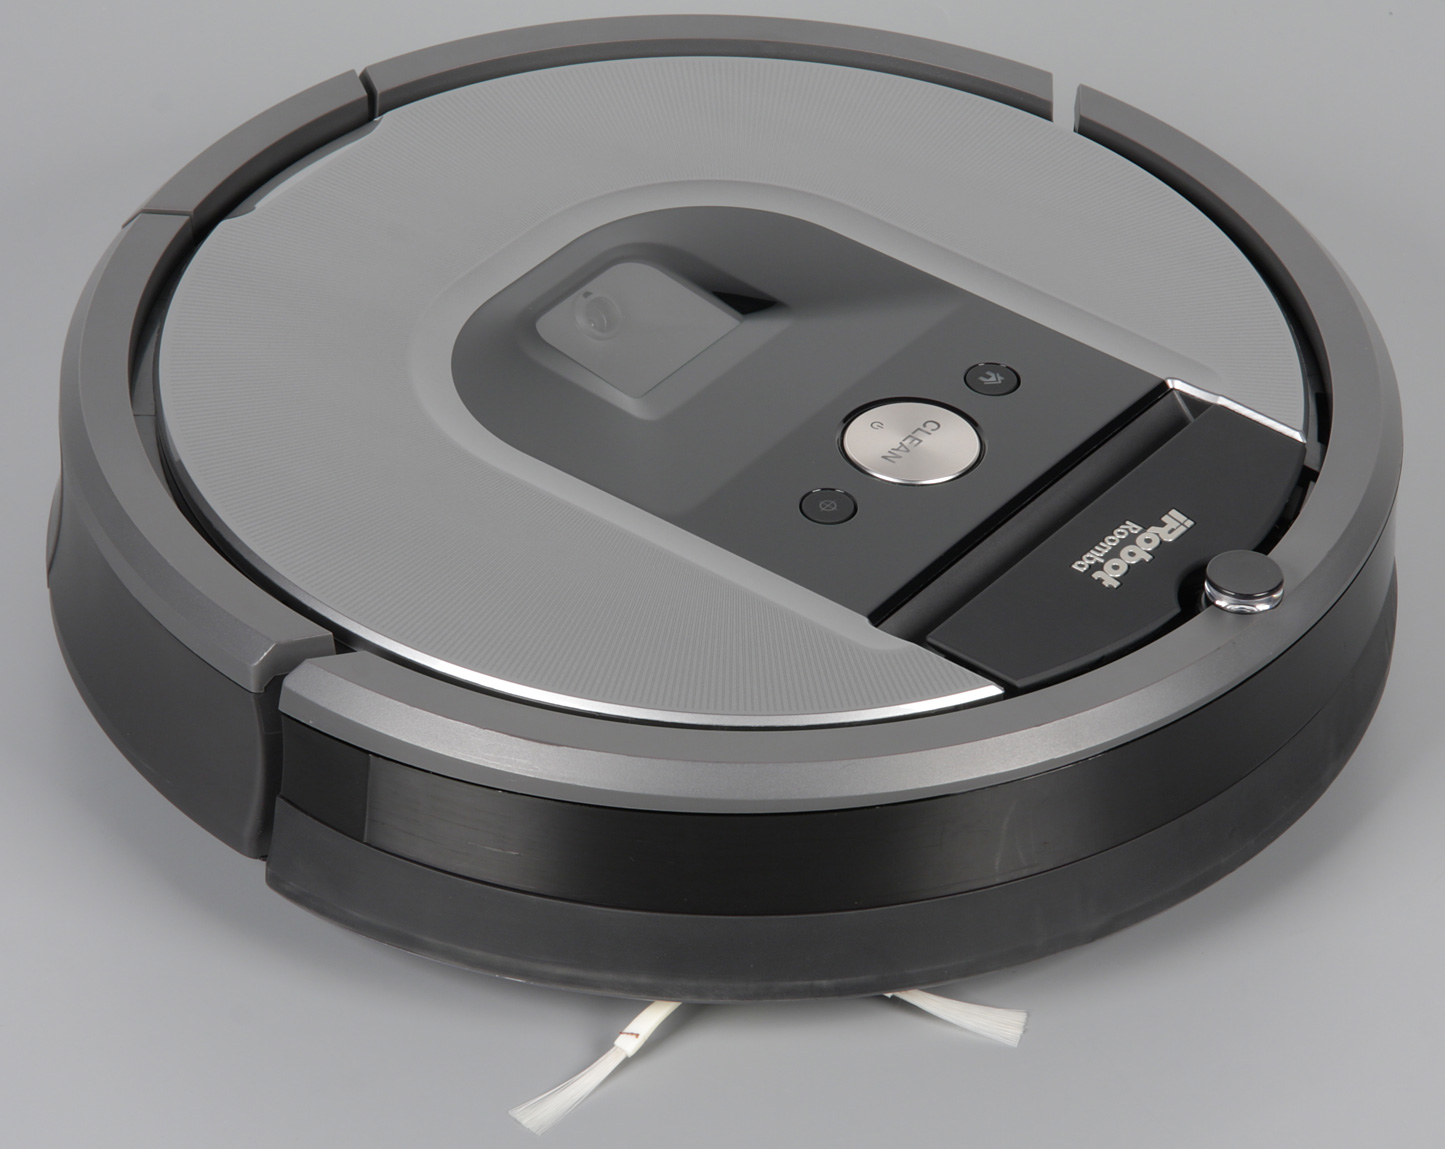 iRobot Roomba 960 side